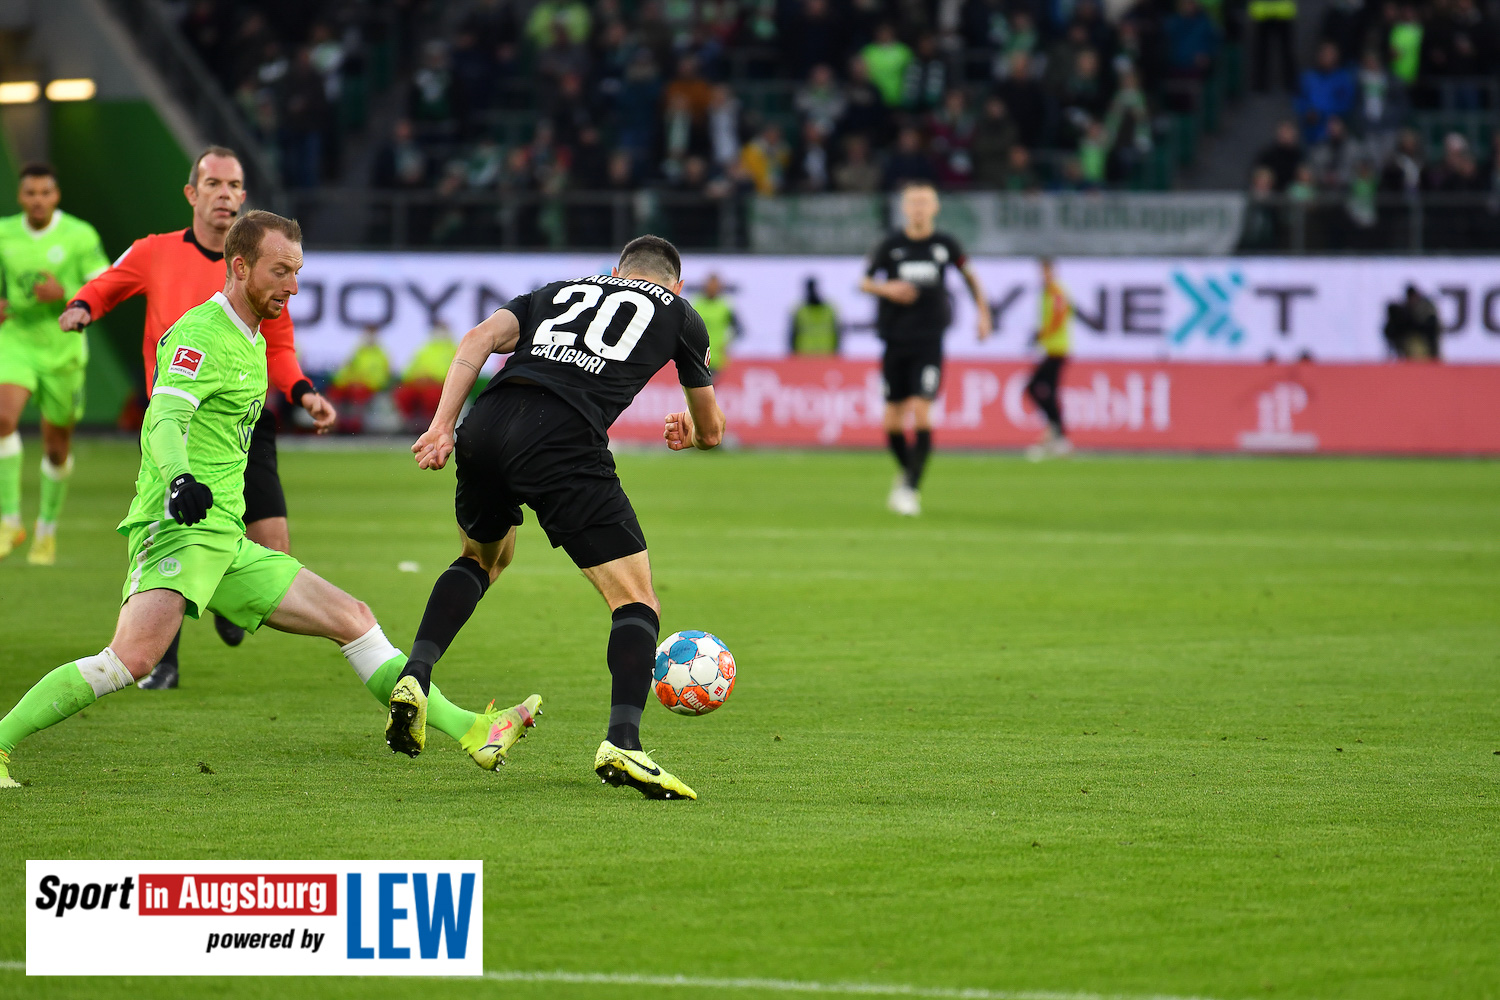 VfL Wolfsburg - FCA 06.11.21 - 19